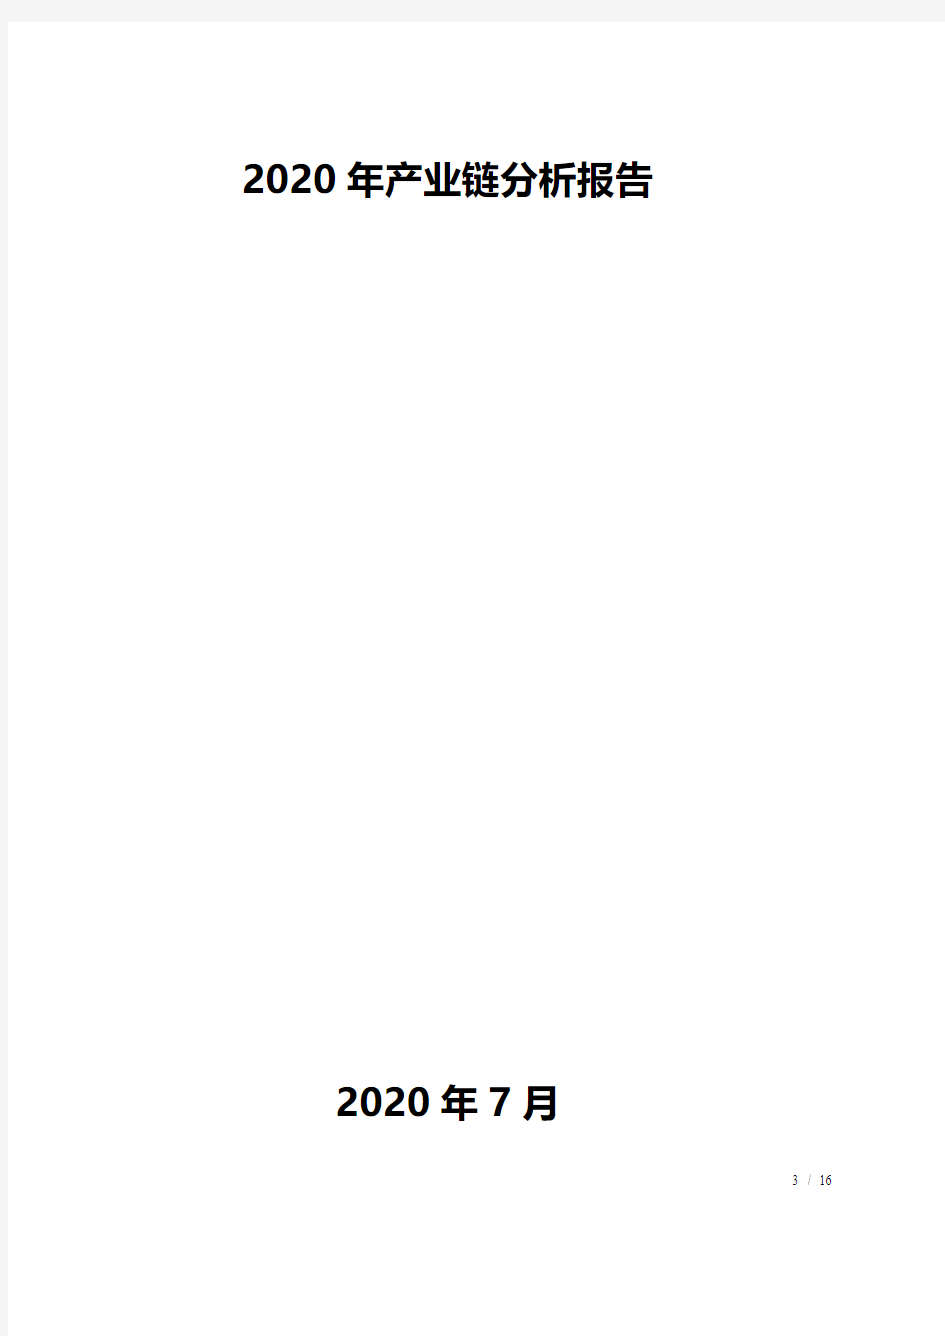 2020年产业链分析报告